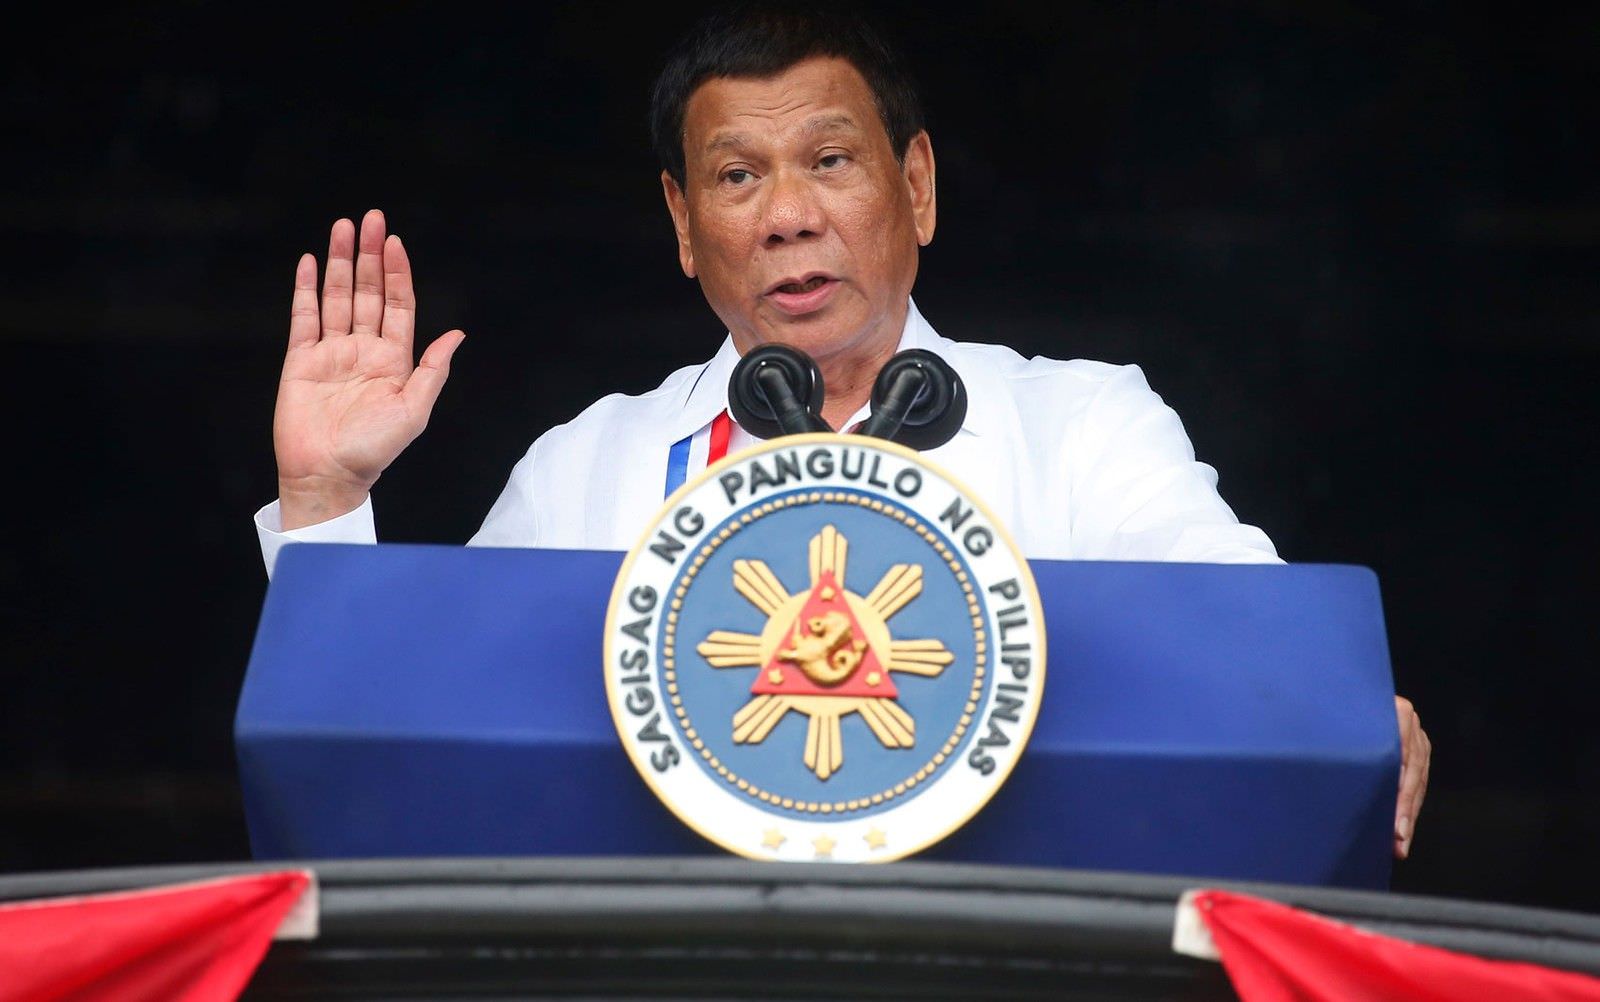 Em discurso, presidente das Filipinas descreve como abusou sexualmente de empregada